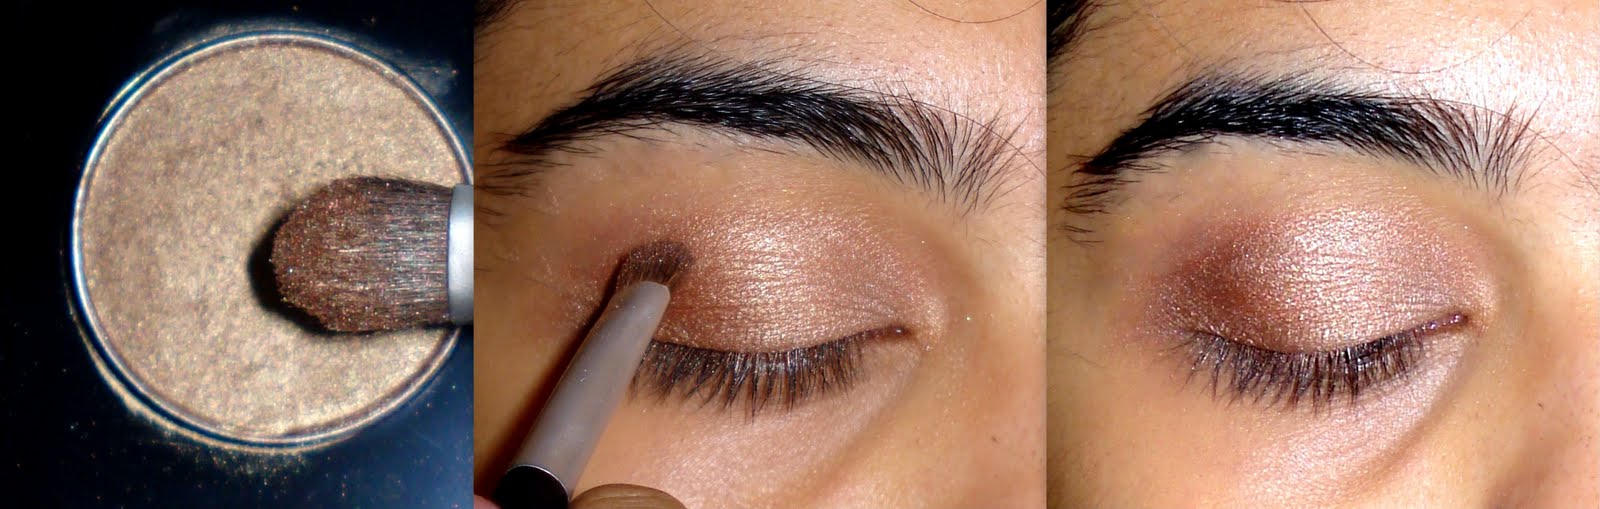 mac eye makeup tutorial for beginners